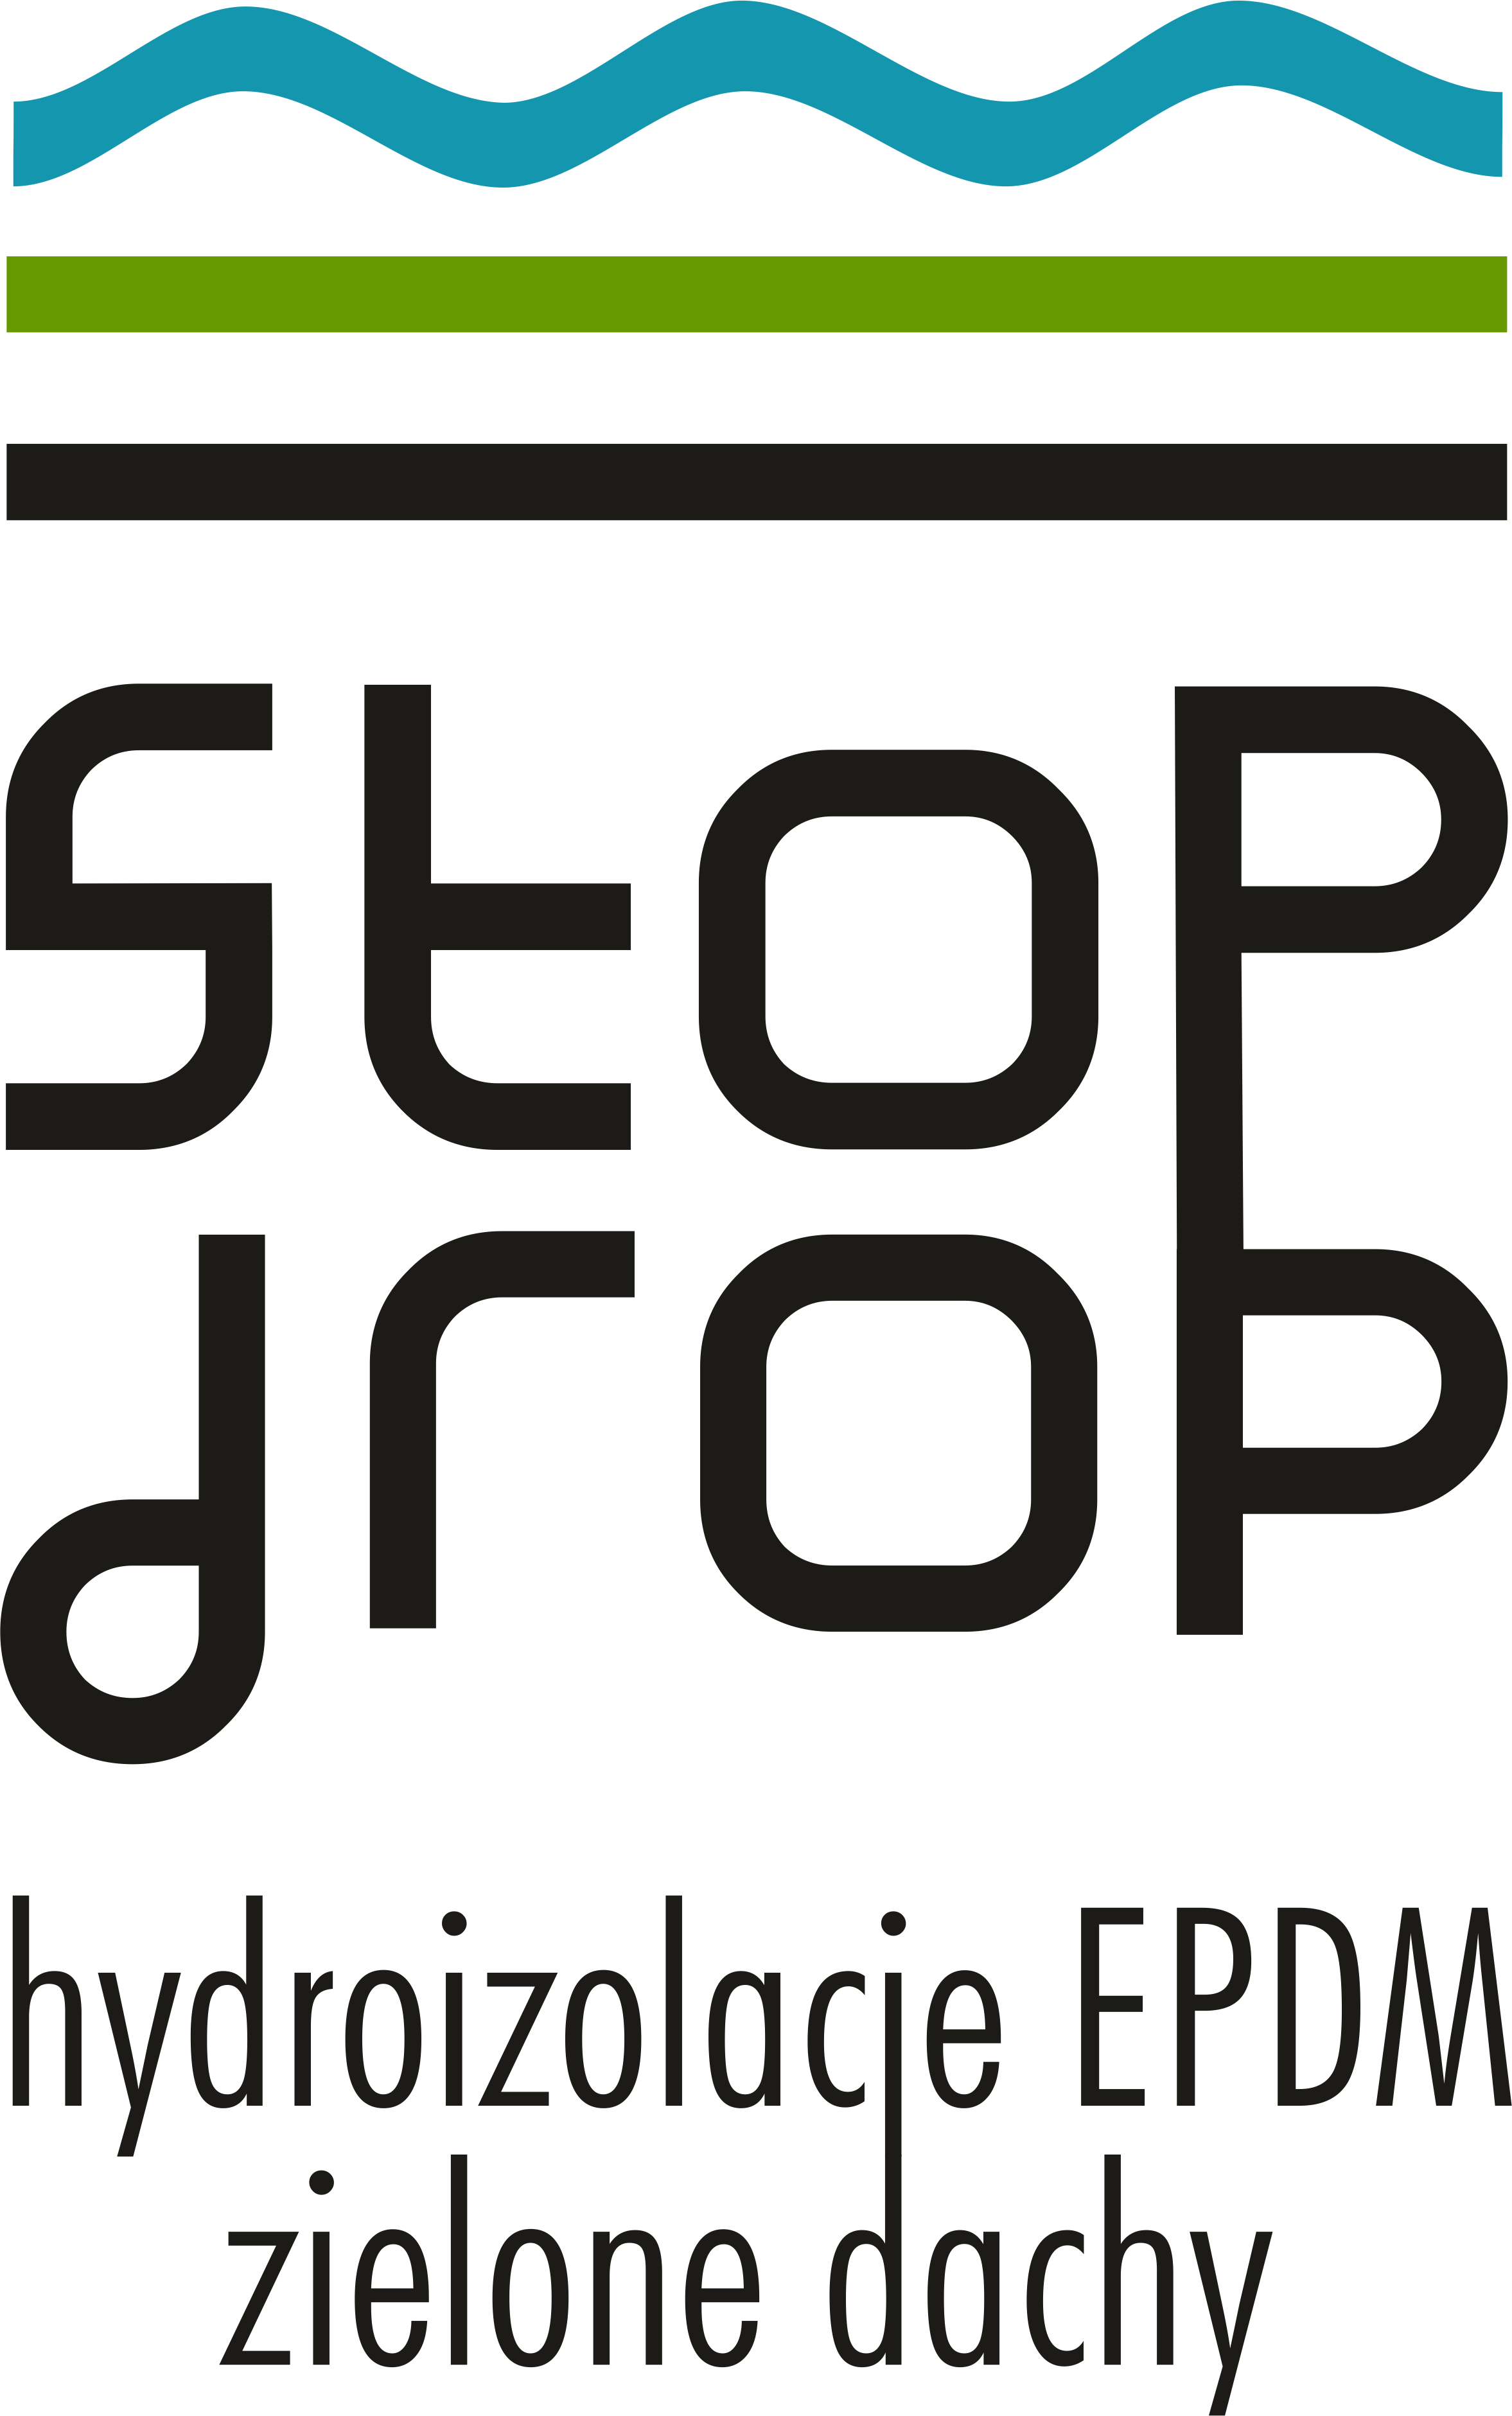 Logo StopDrop - Hydroizolacja EPDM - Zielone dachy